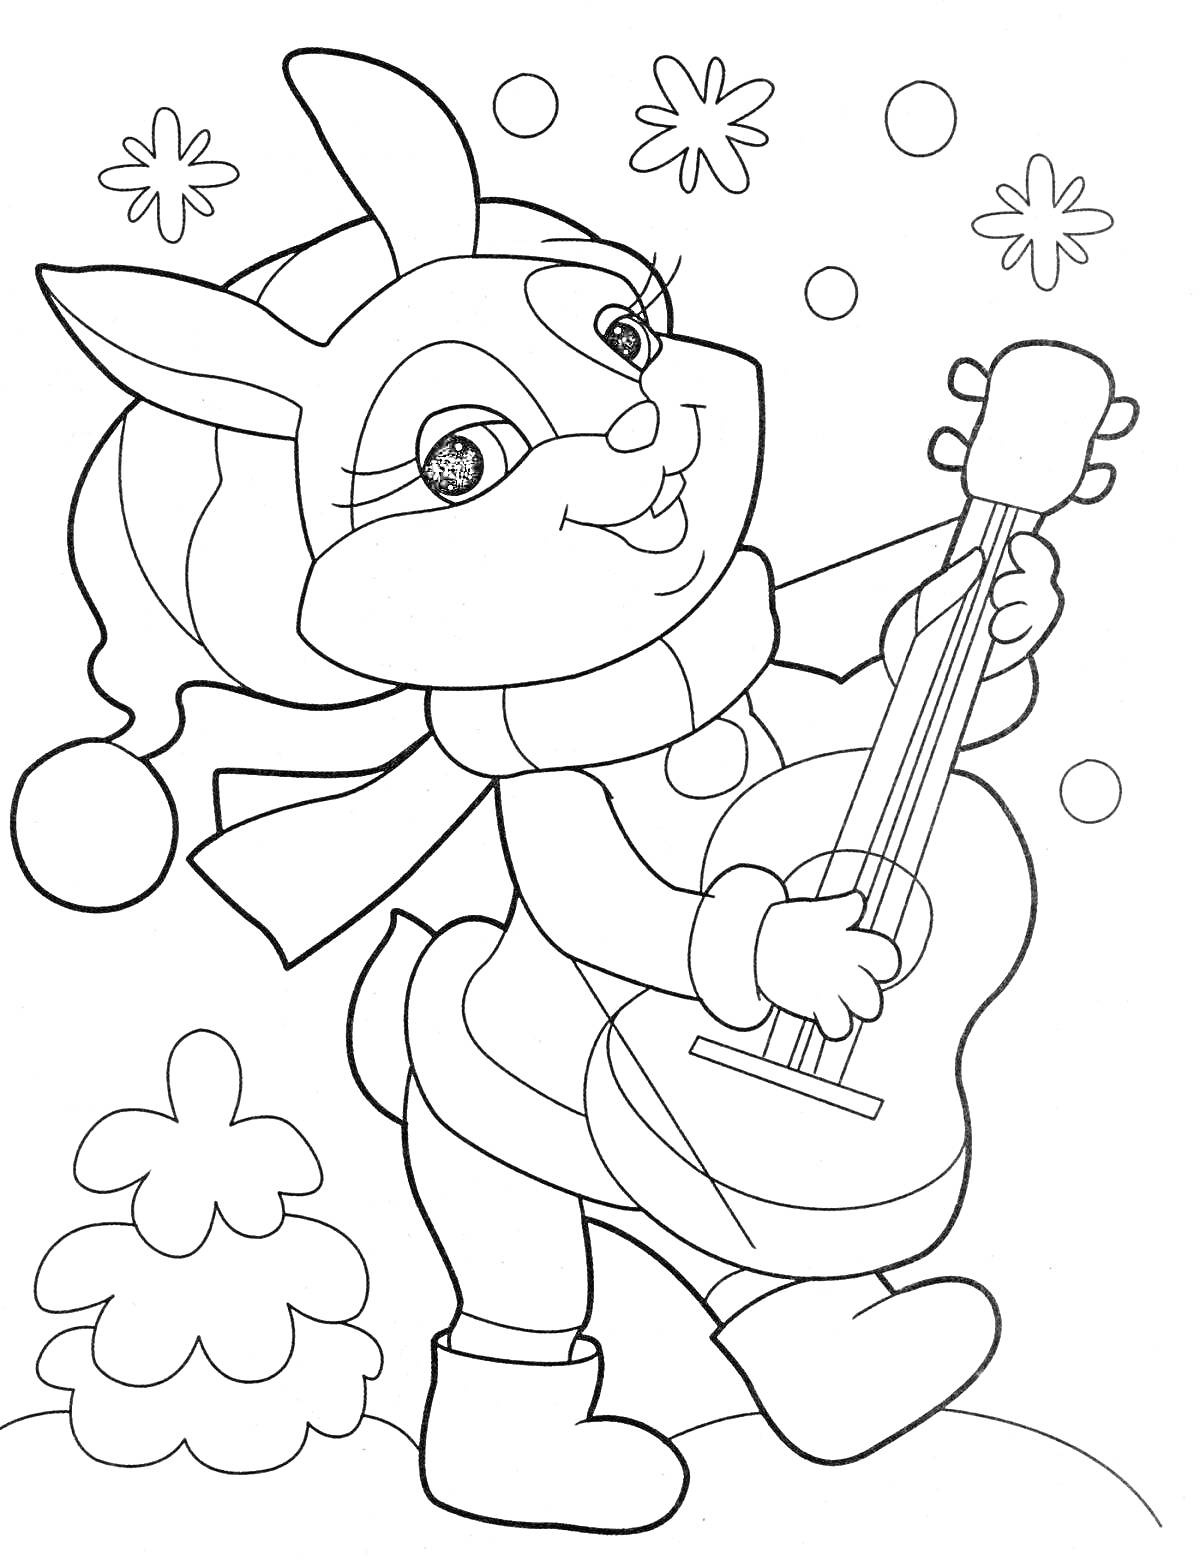 Раскраска Новый год - заяц с гитарой на снегу, елочка, снежинки